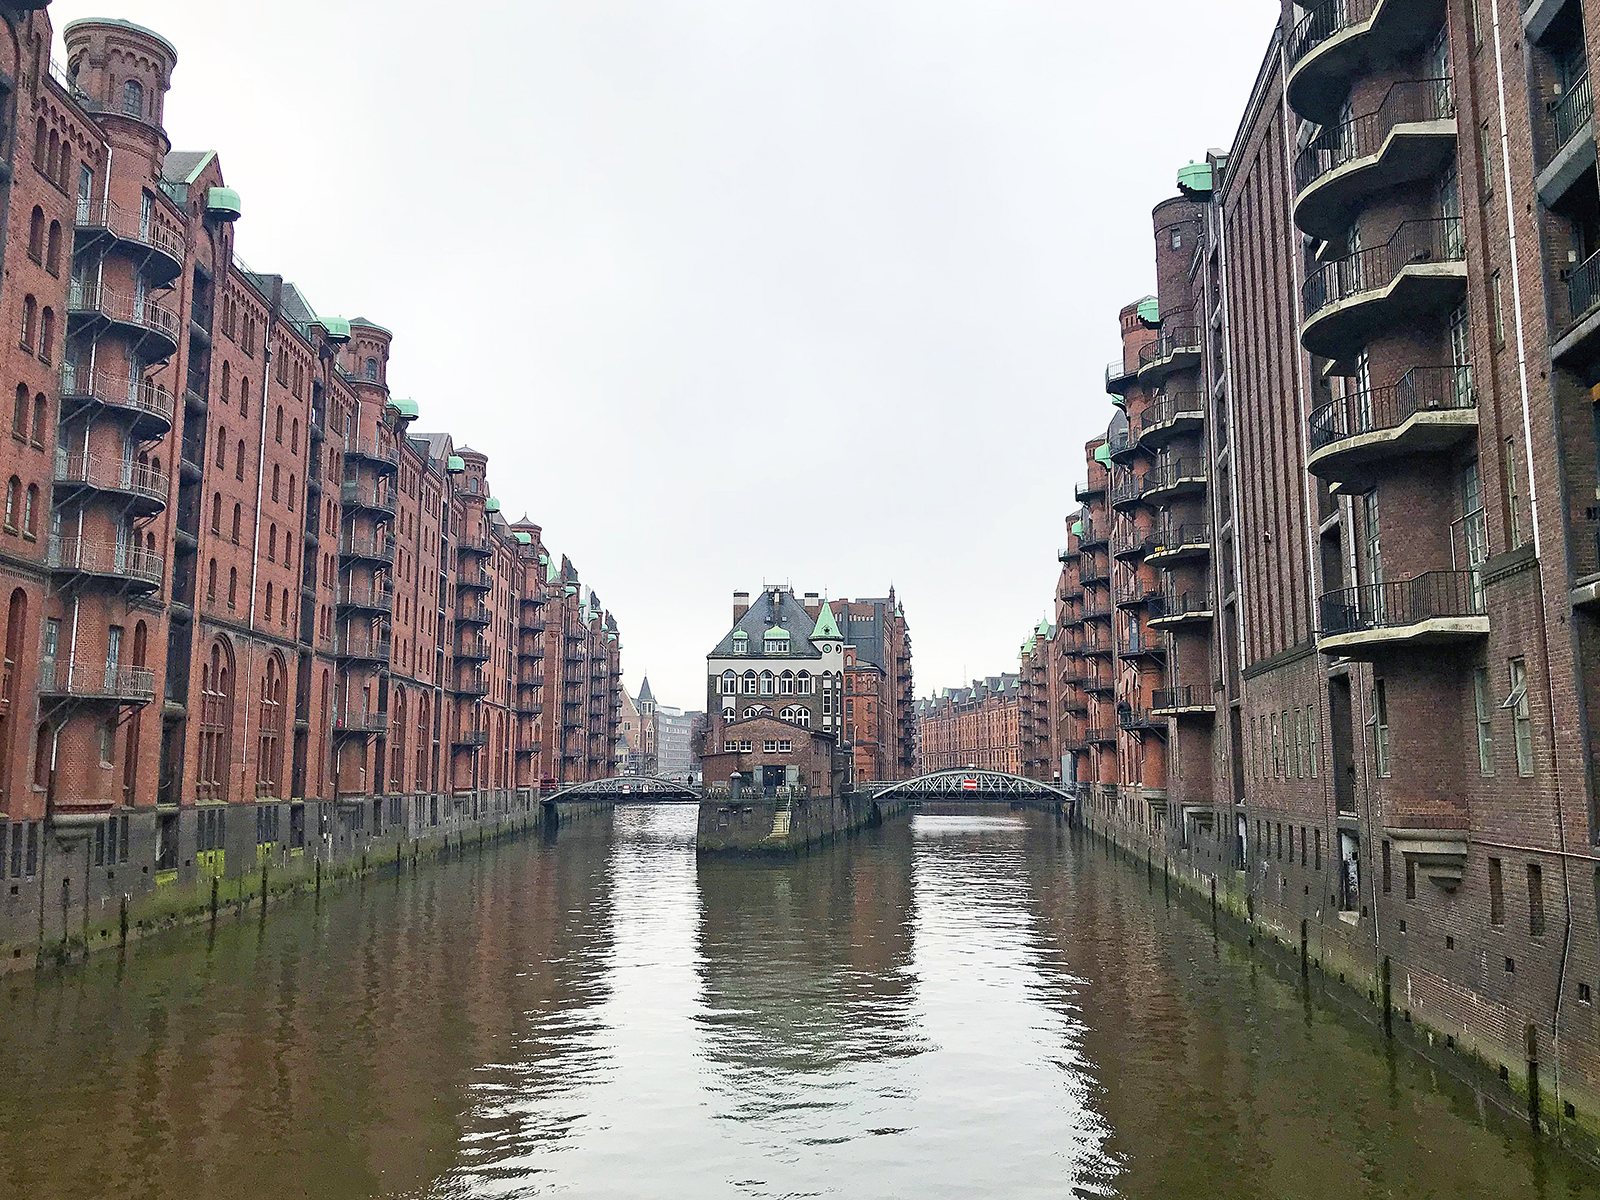 Travel-Talk Hamburg: Interview & Insidertipps von der Hamburger Bloggerin Harriet Dohmeyer